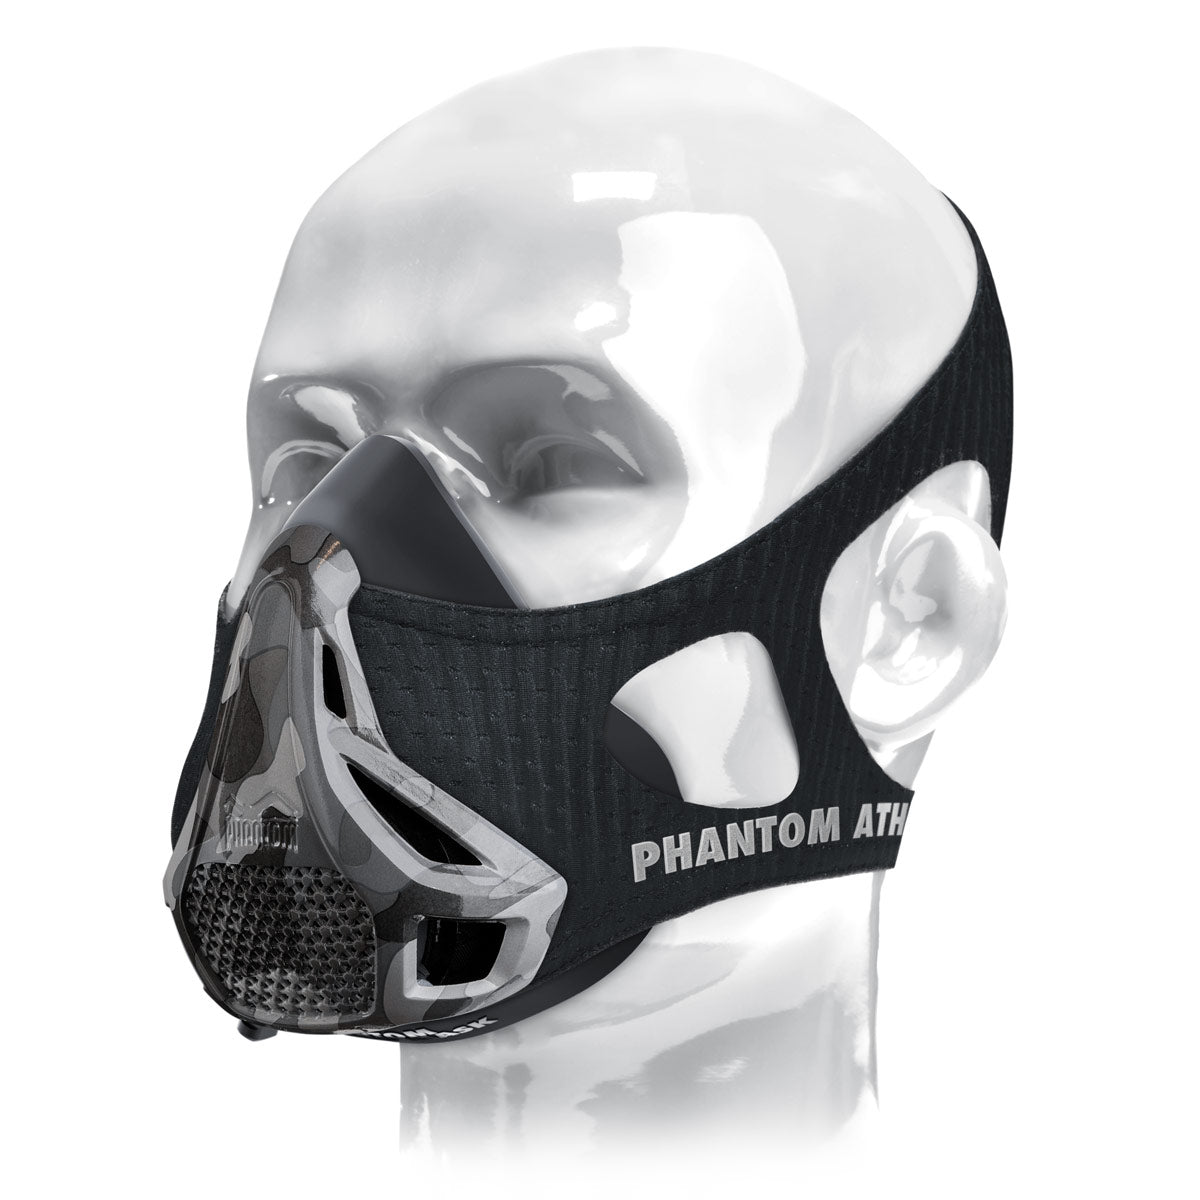 Phantom training mask - camo edition